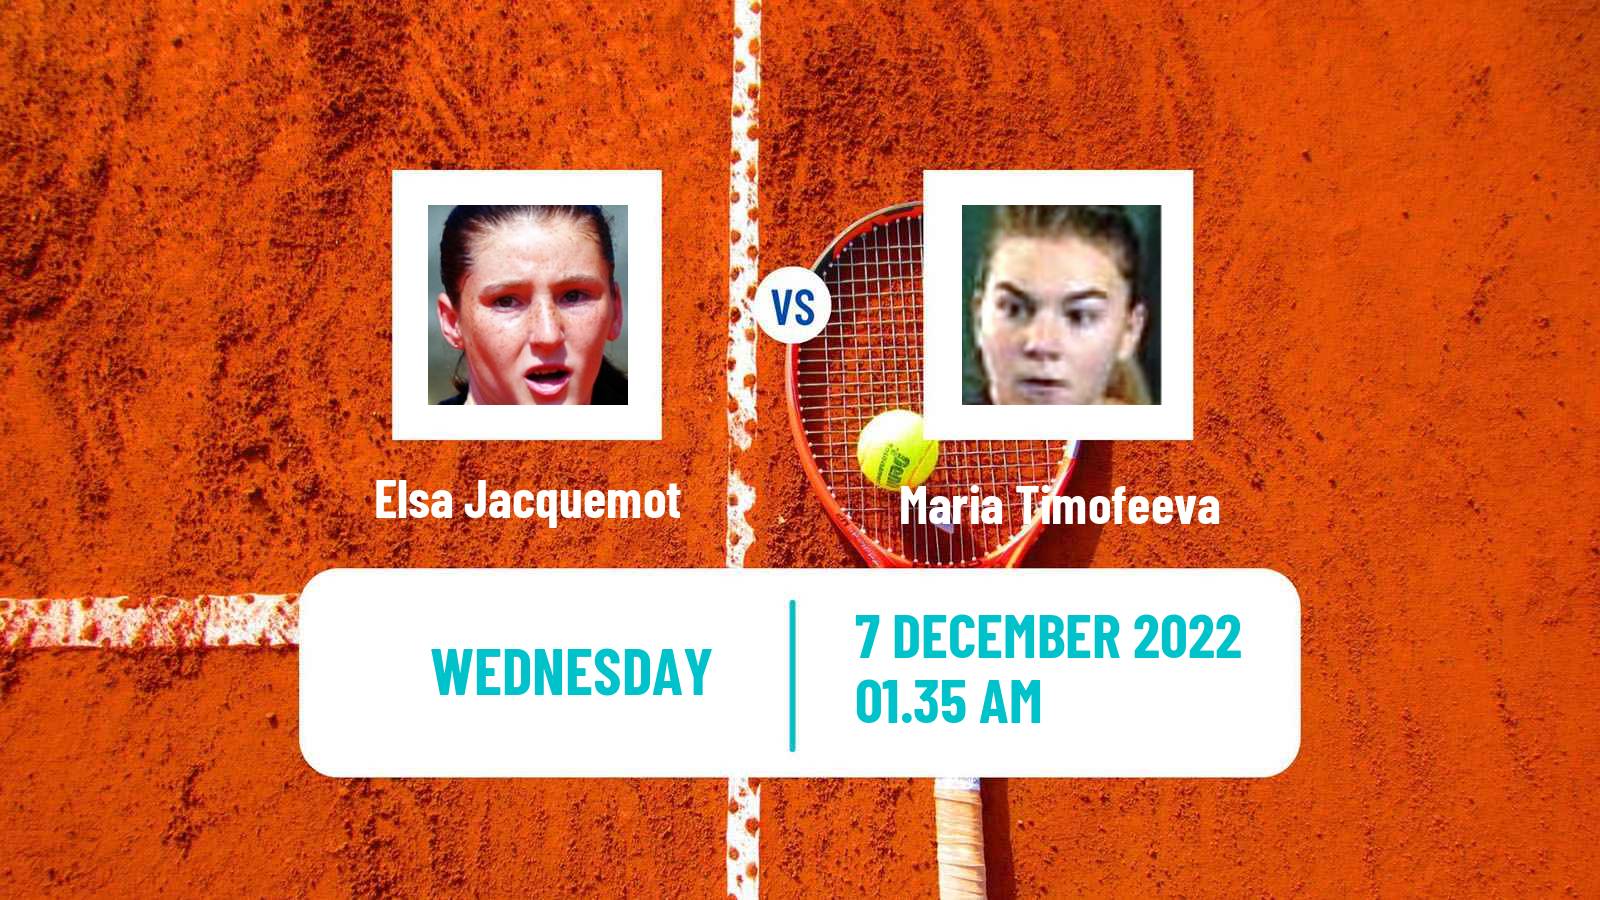 Tennis ITF Tournaments Elsa Jacquemot - Maria Timofeeva